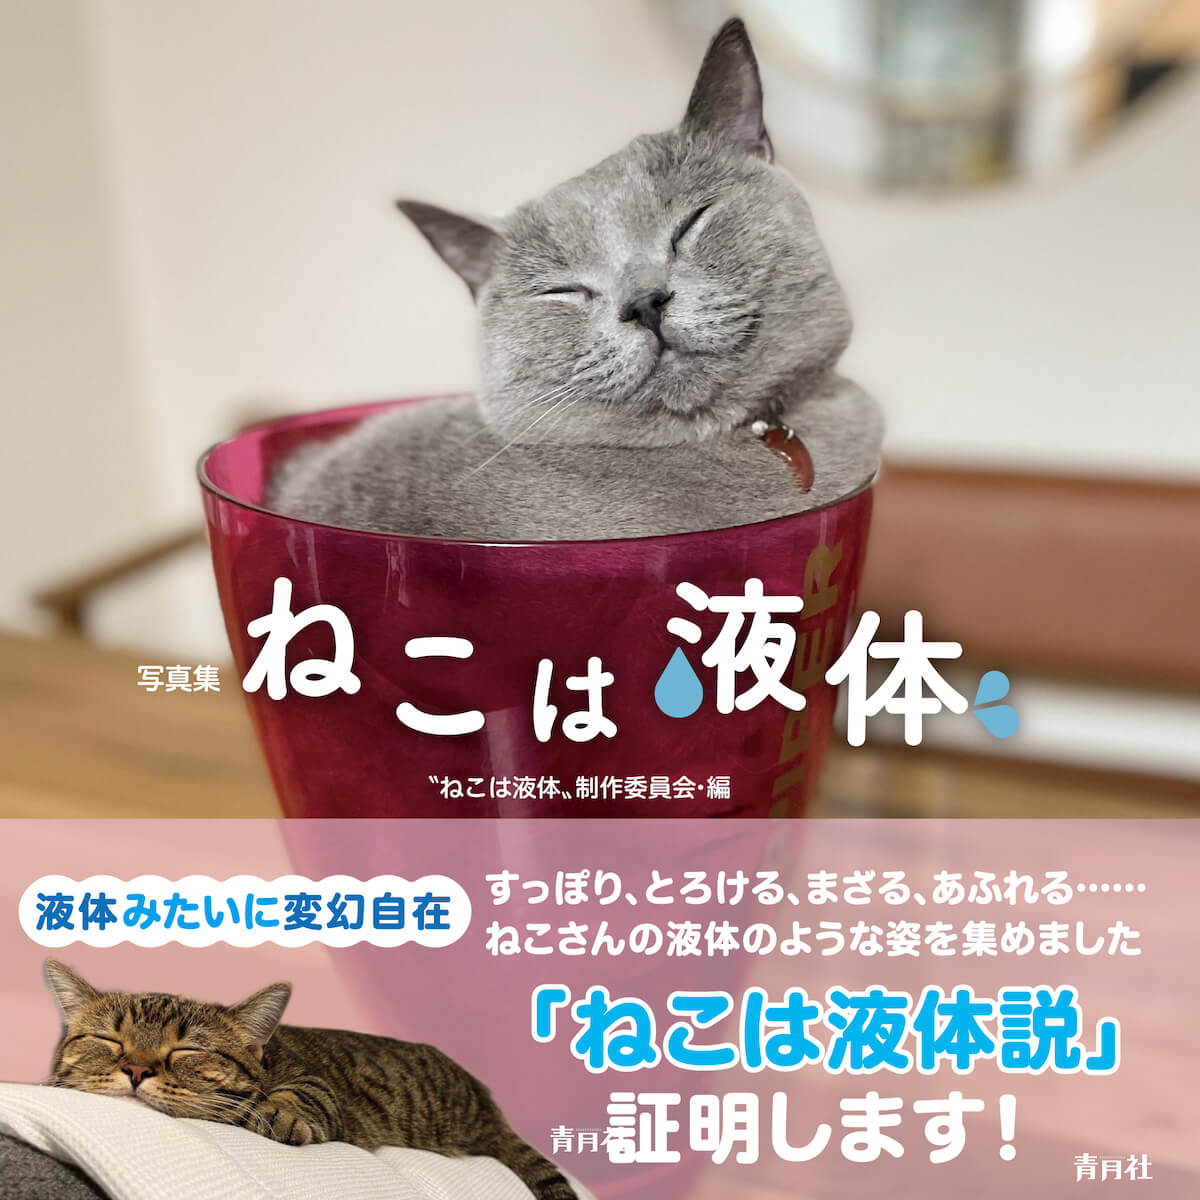 青月社から出版された猫の写真集『ねこは液体』表紙イメージ